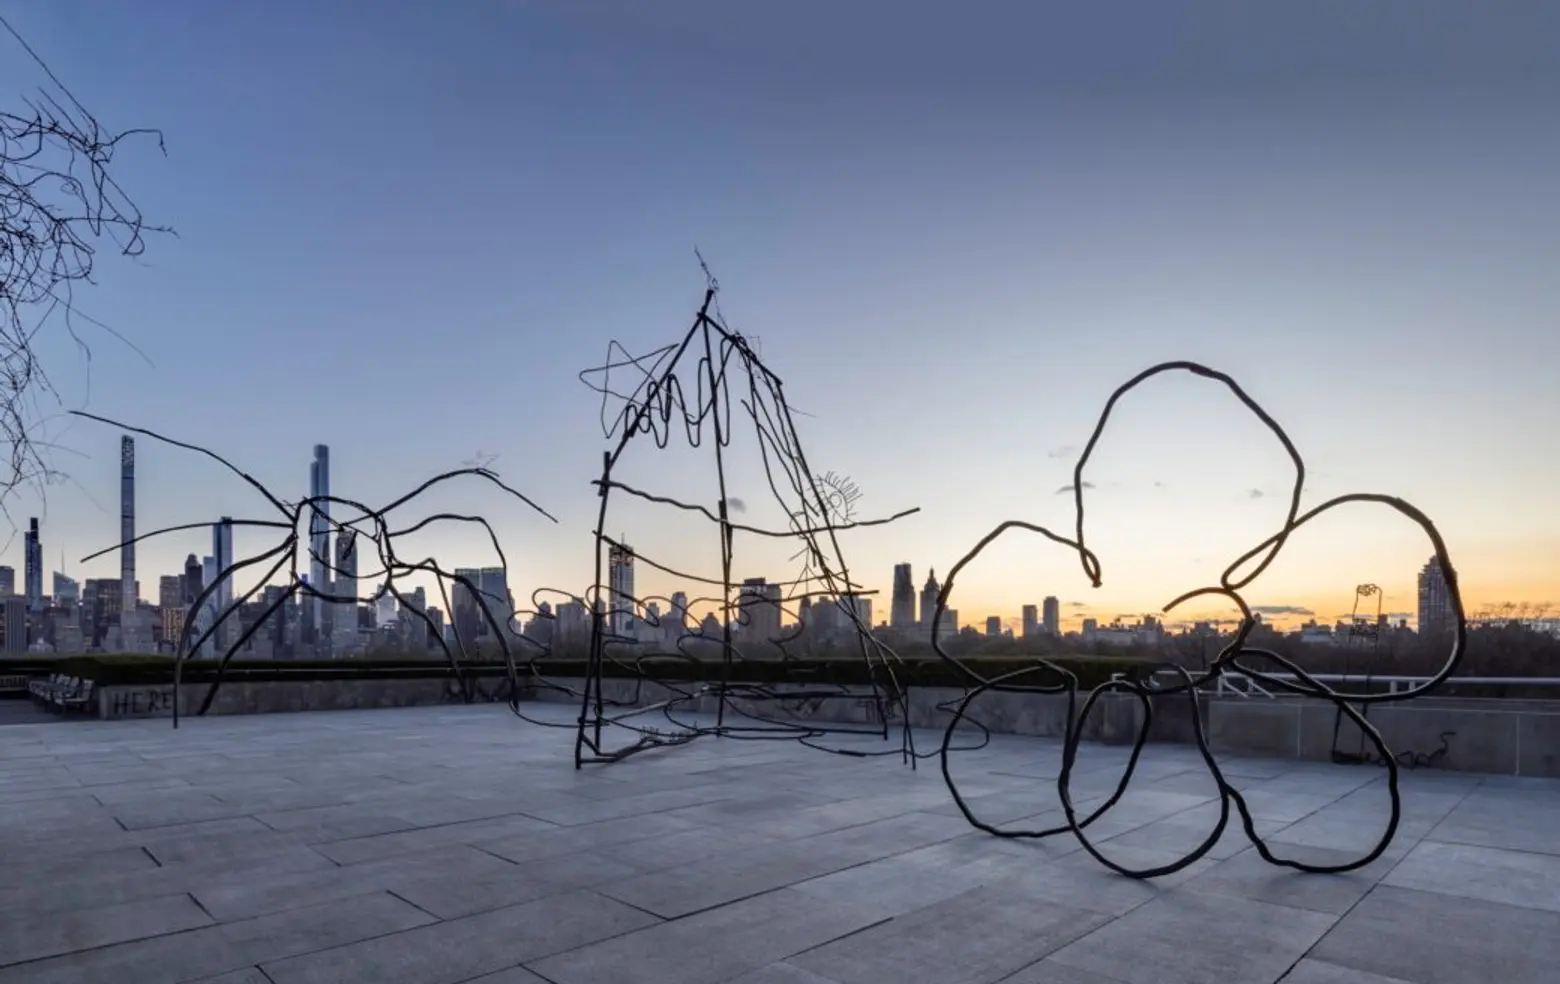 The Met's rooftop installation features sculptures inspired by children's desktop doodles